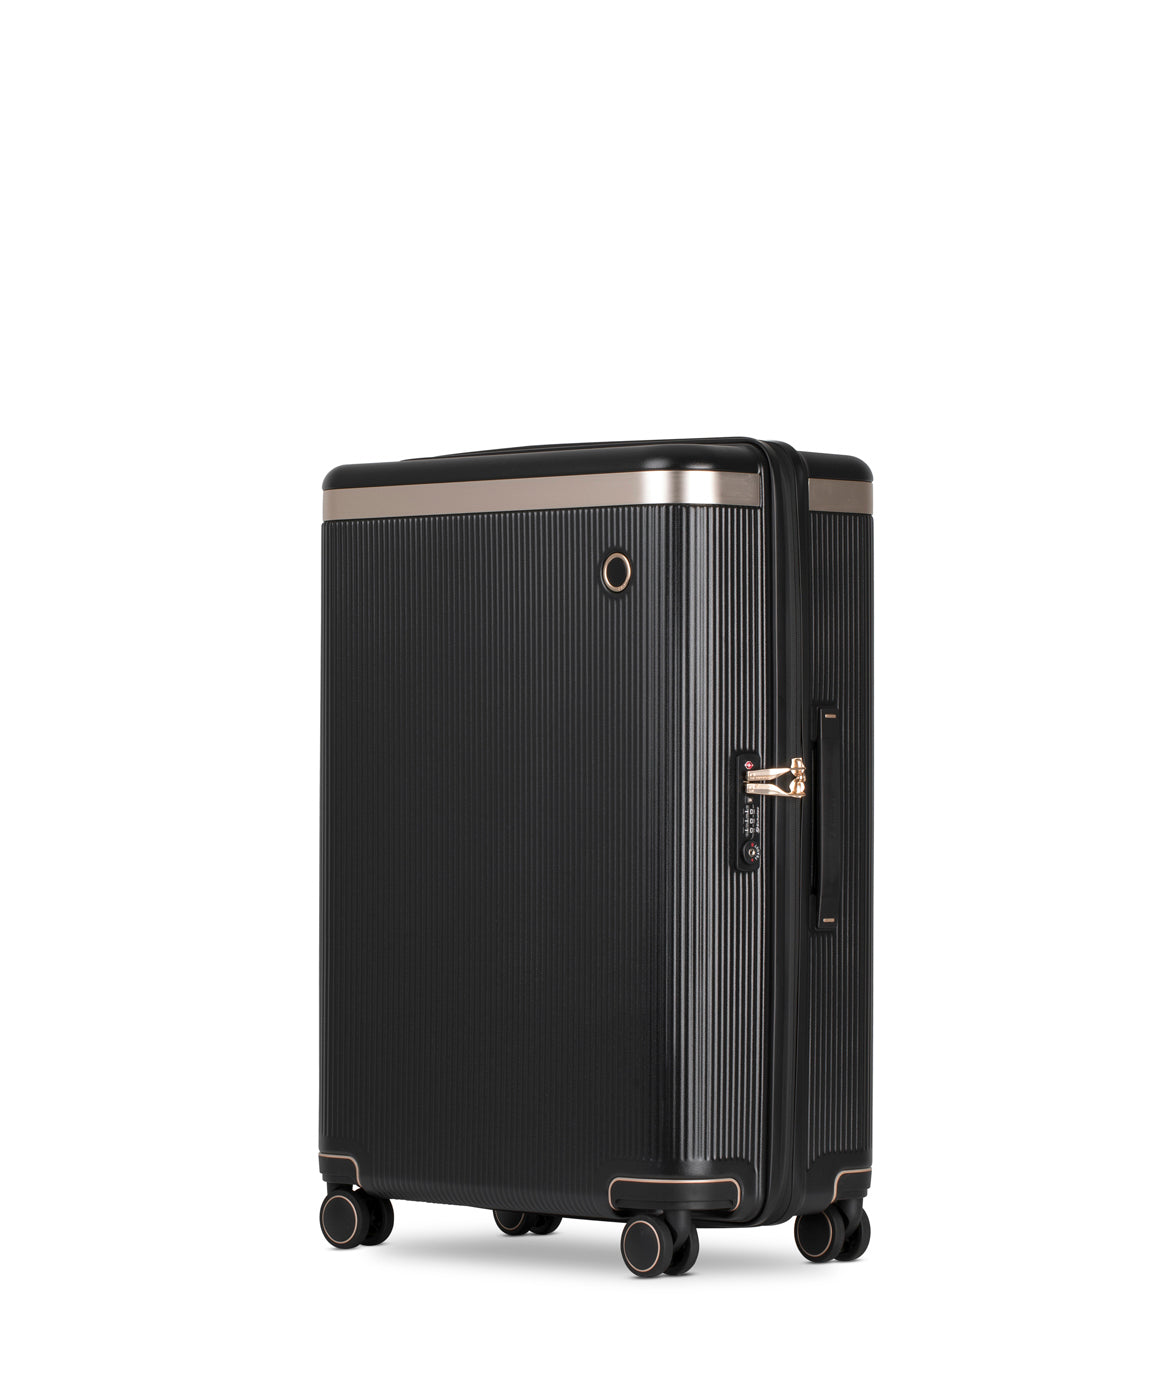 Echolac Dynasty Suitcase, Medium 67 cm, Black von der Seite